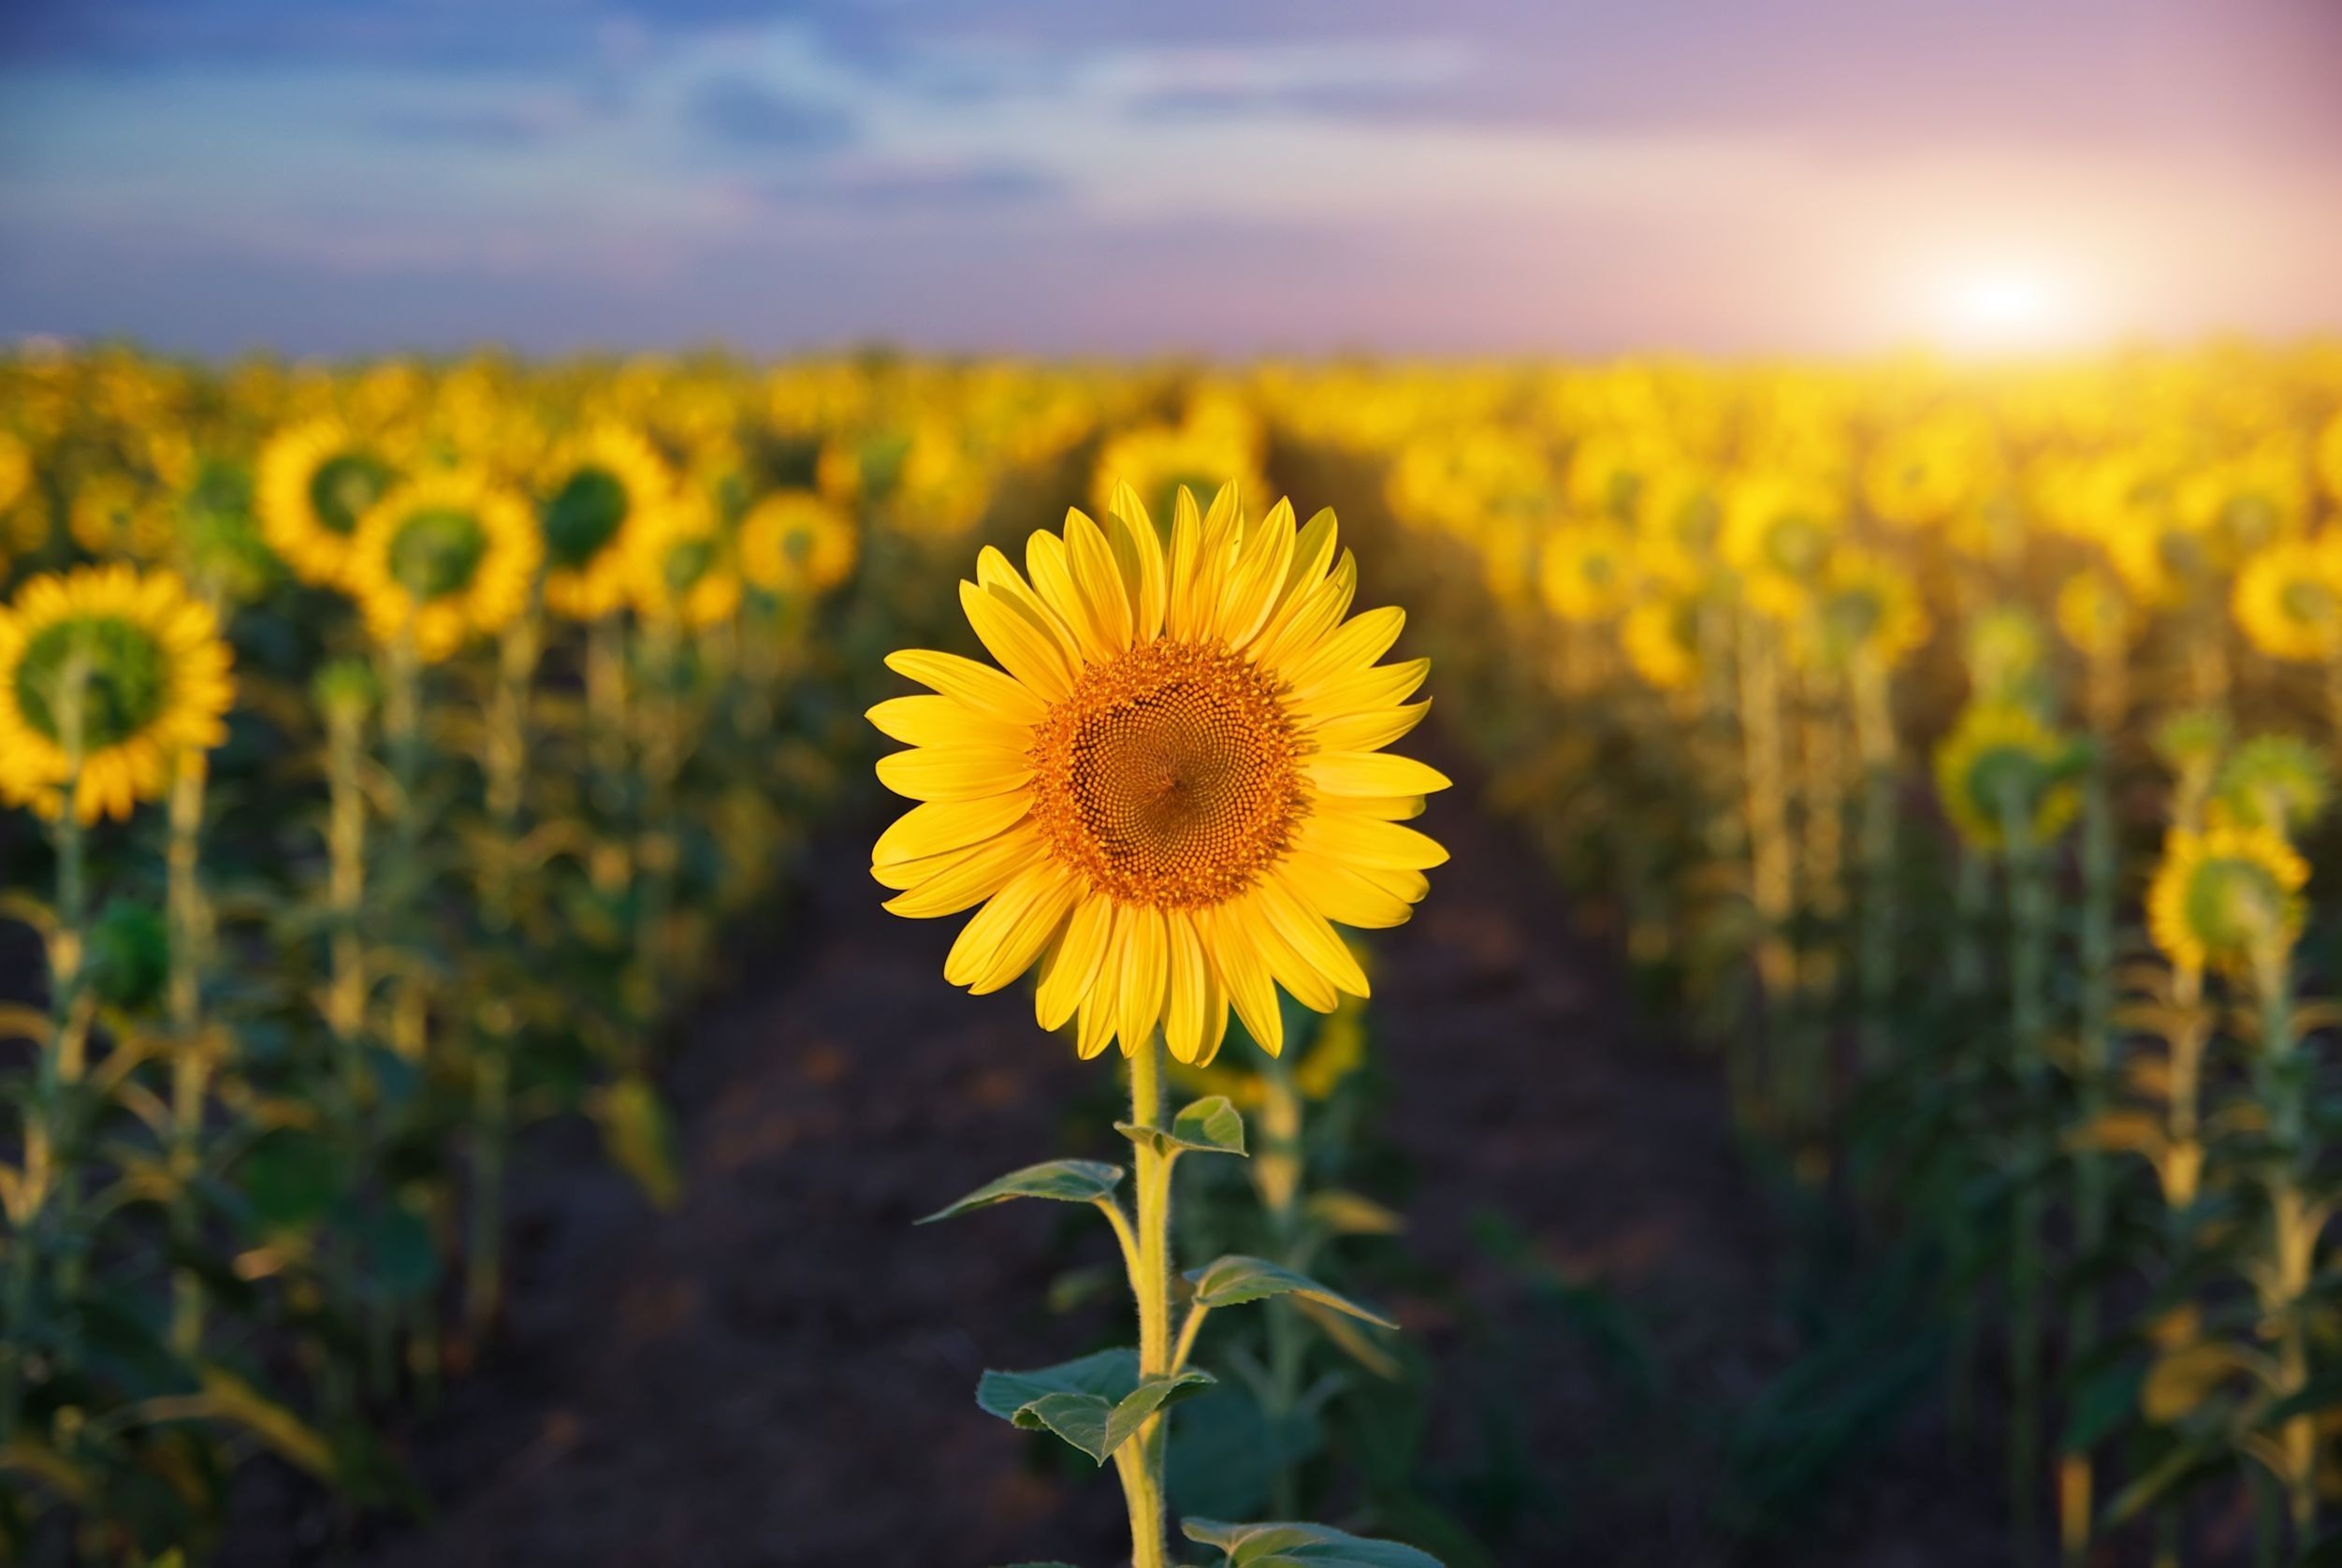 sfondo del desktop download gratuito di widescreen hd,fiore,girasole,pianta fiorita,cielo,giallo